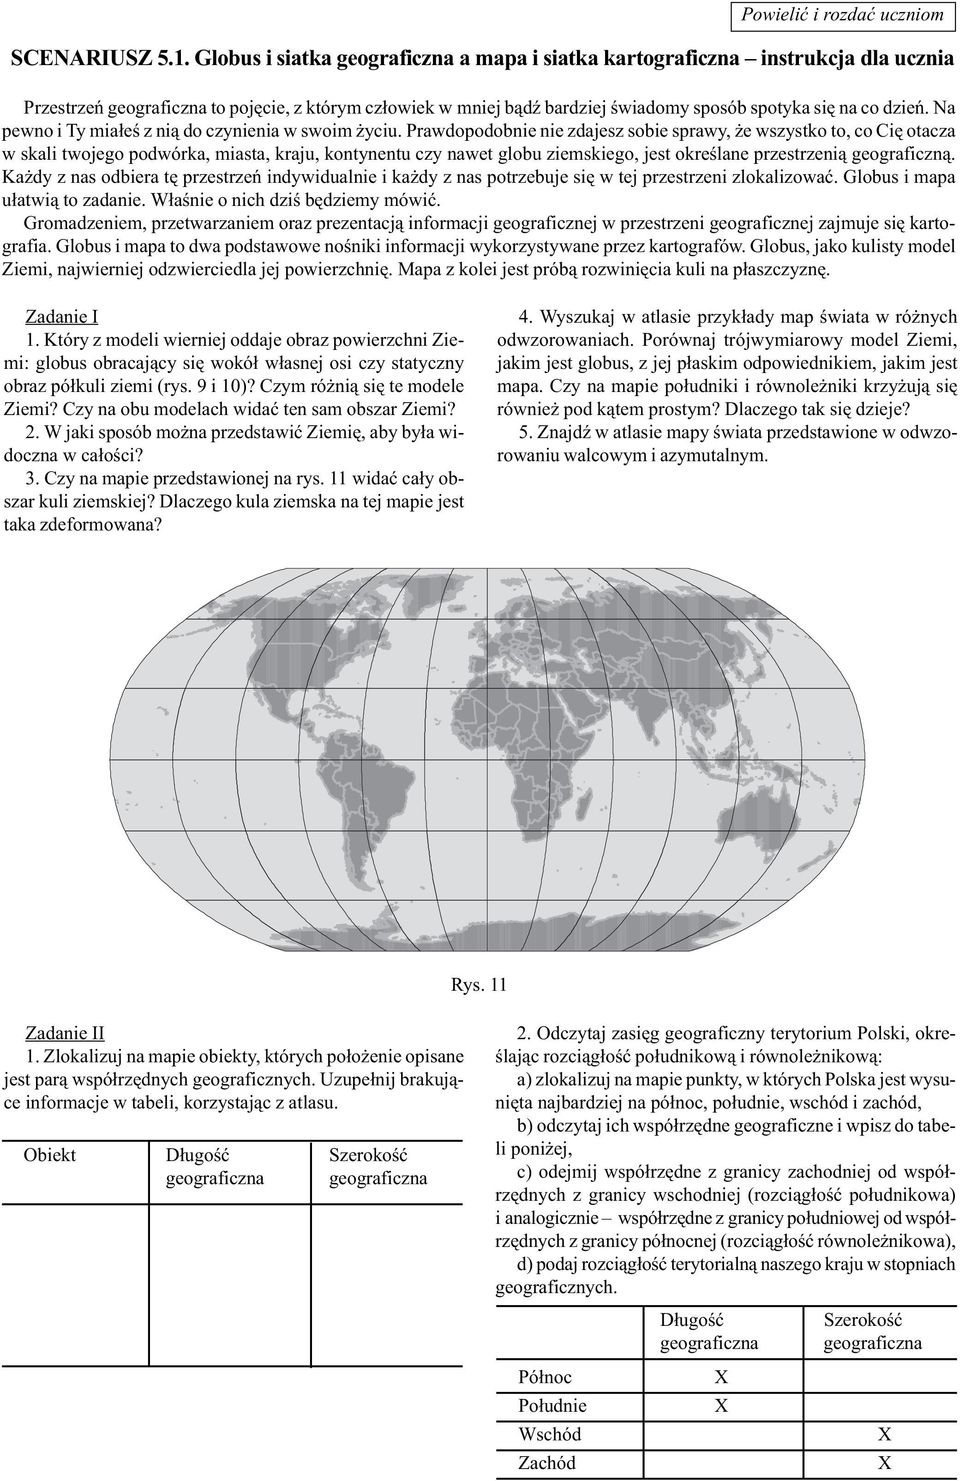 SCENARIUSZ 5.1. Globus i siatka geograficzna a mapa i siatka kartograficzna  instrukcja dla ucznia - PDF Free Download